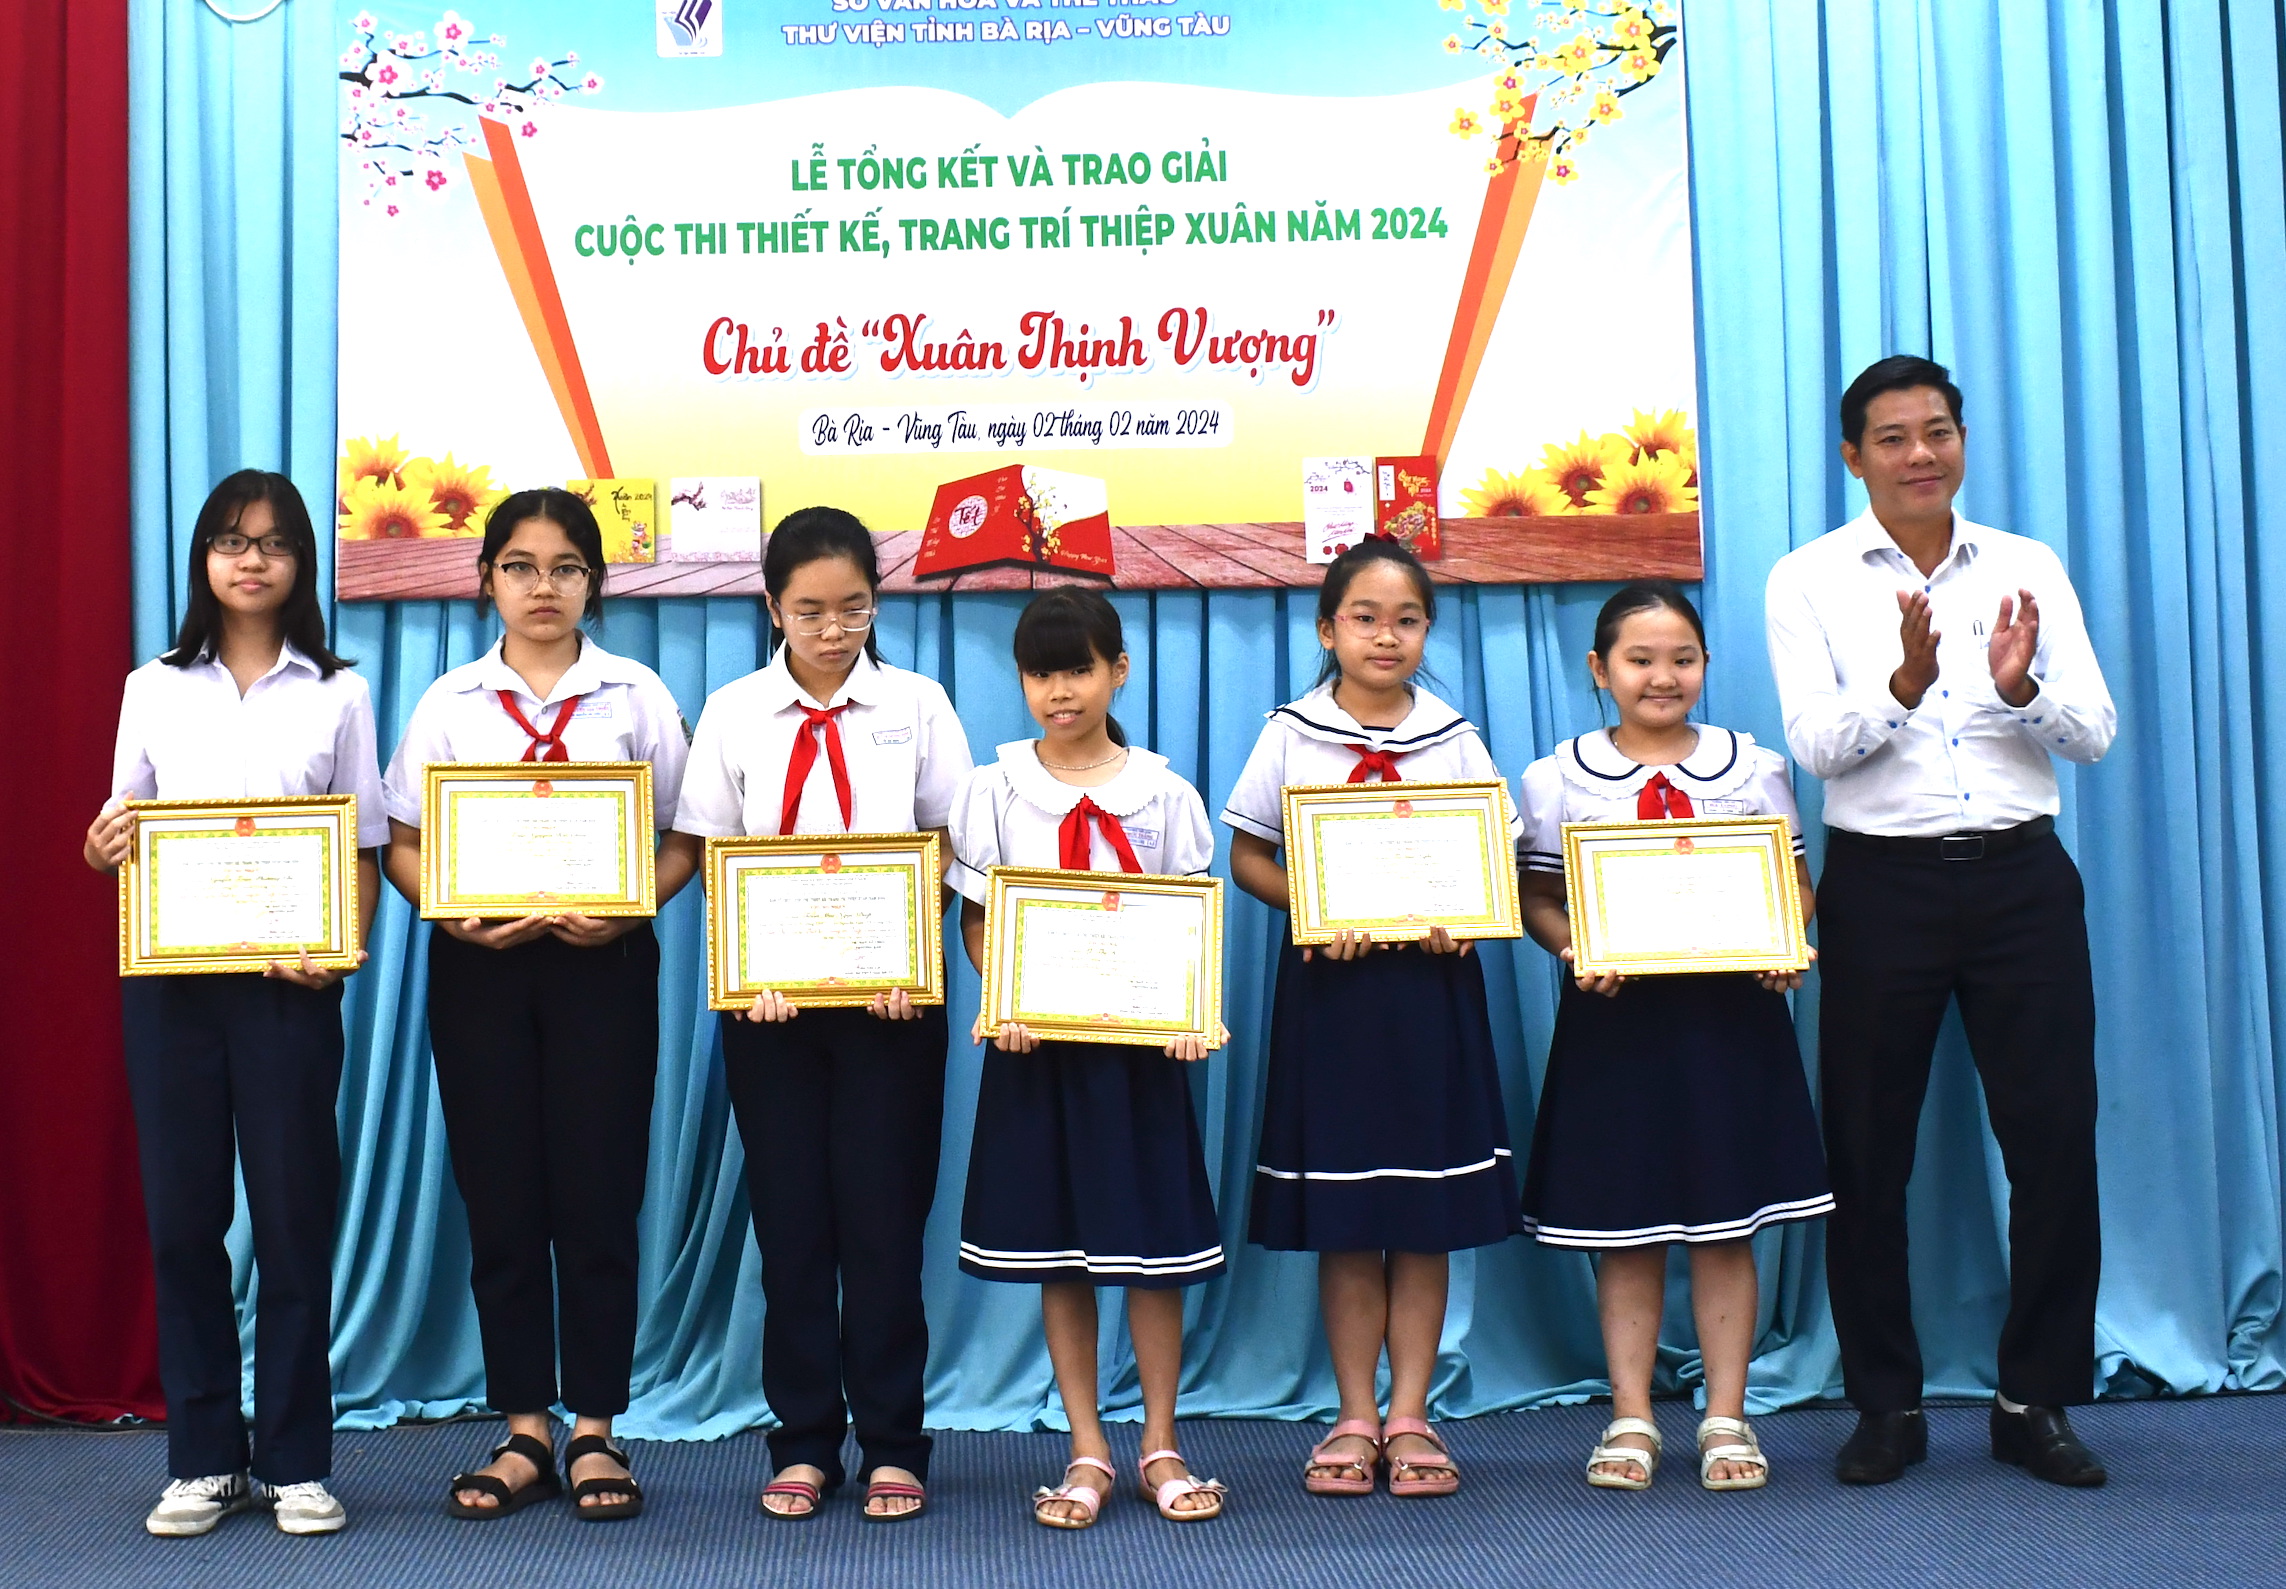 Ông Trần Công Sơn, Giám đốc Thư viện tỉnh trao giải đến các thí sinh đạt giải bảng dành cho HS.